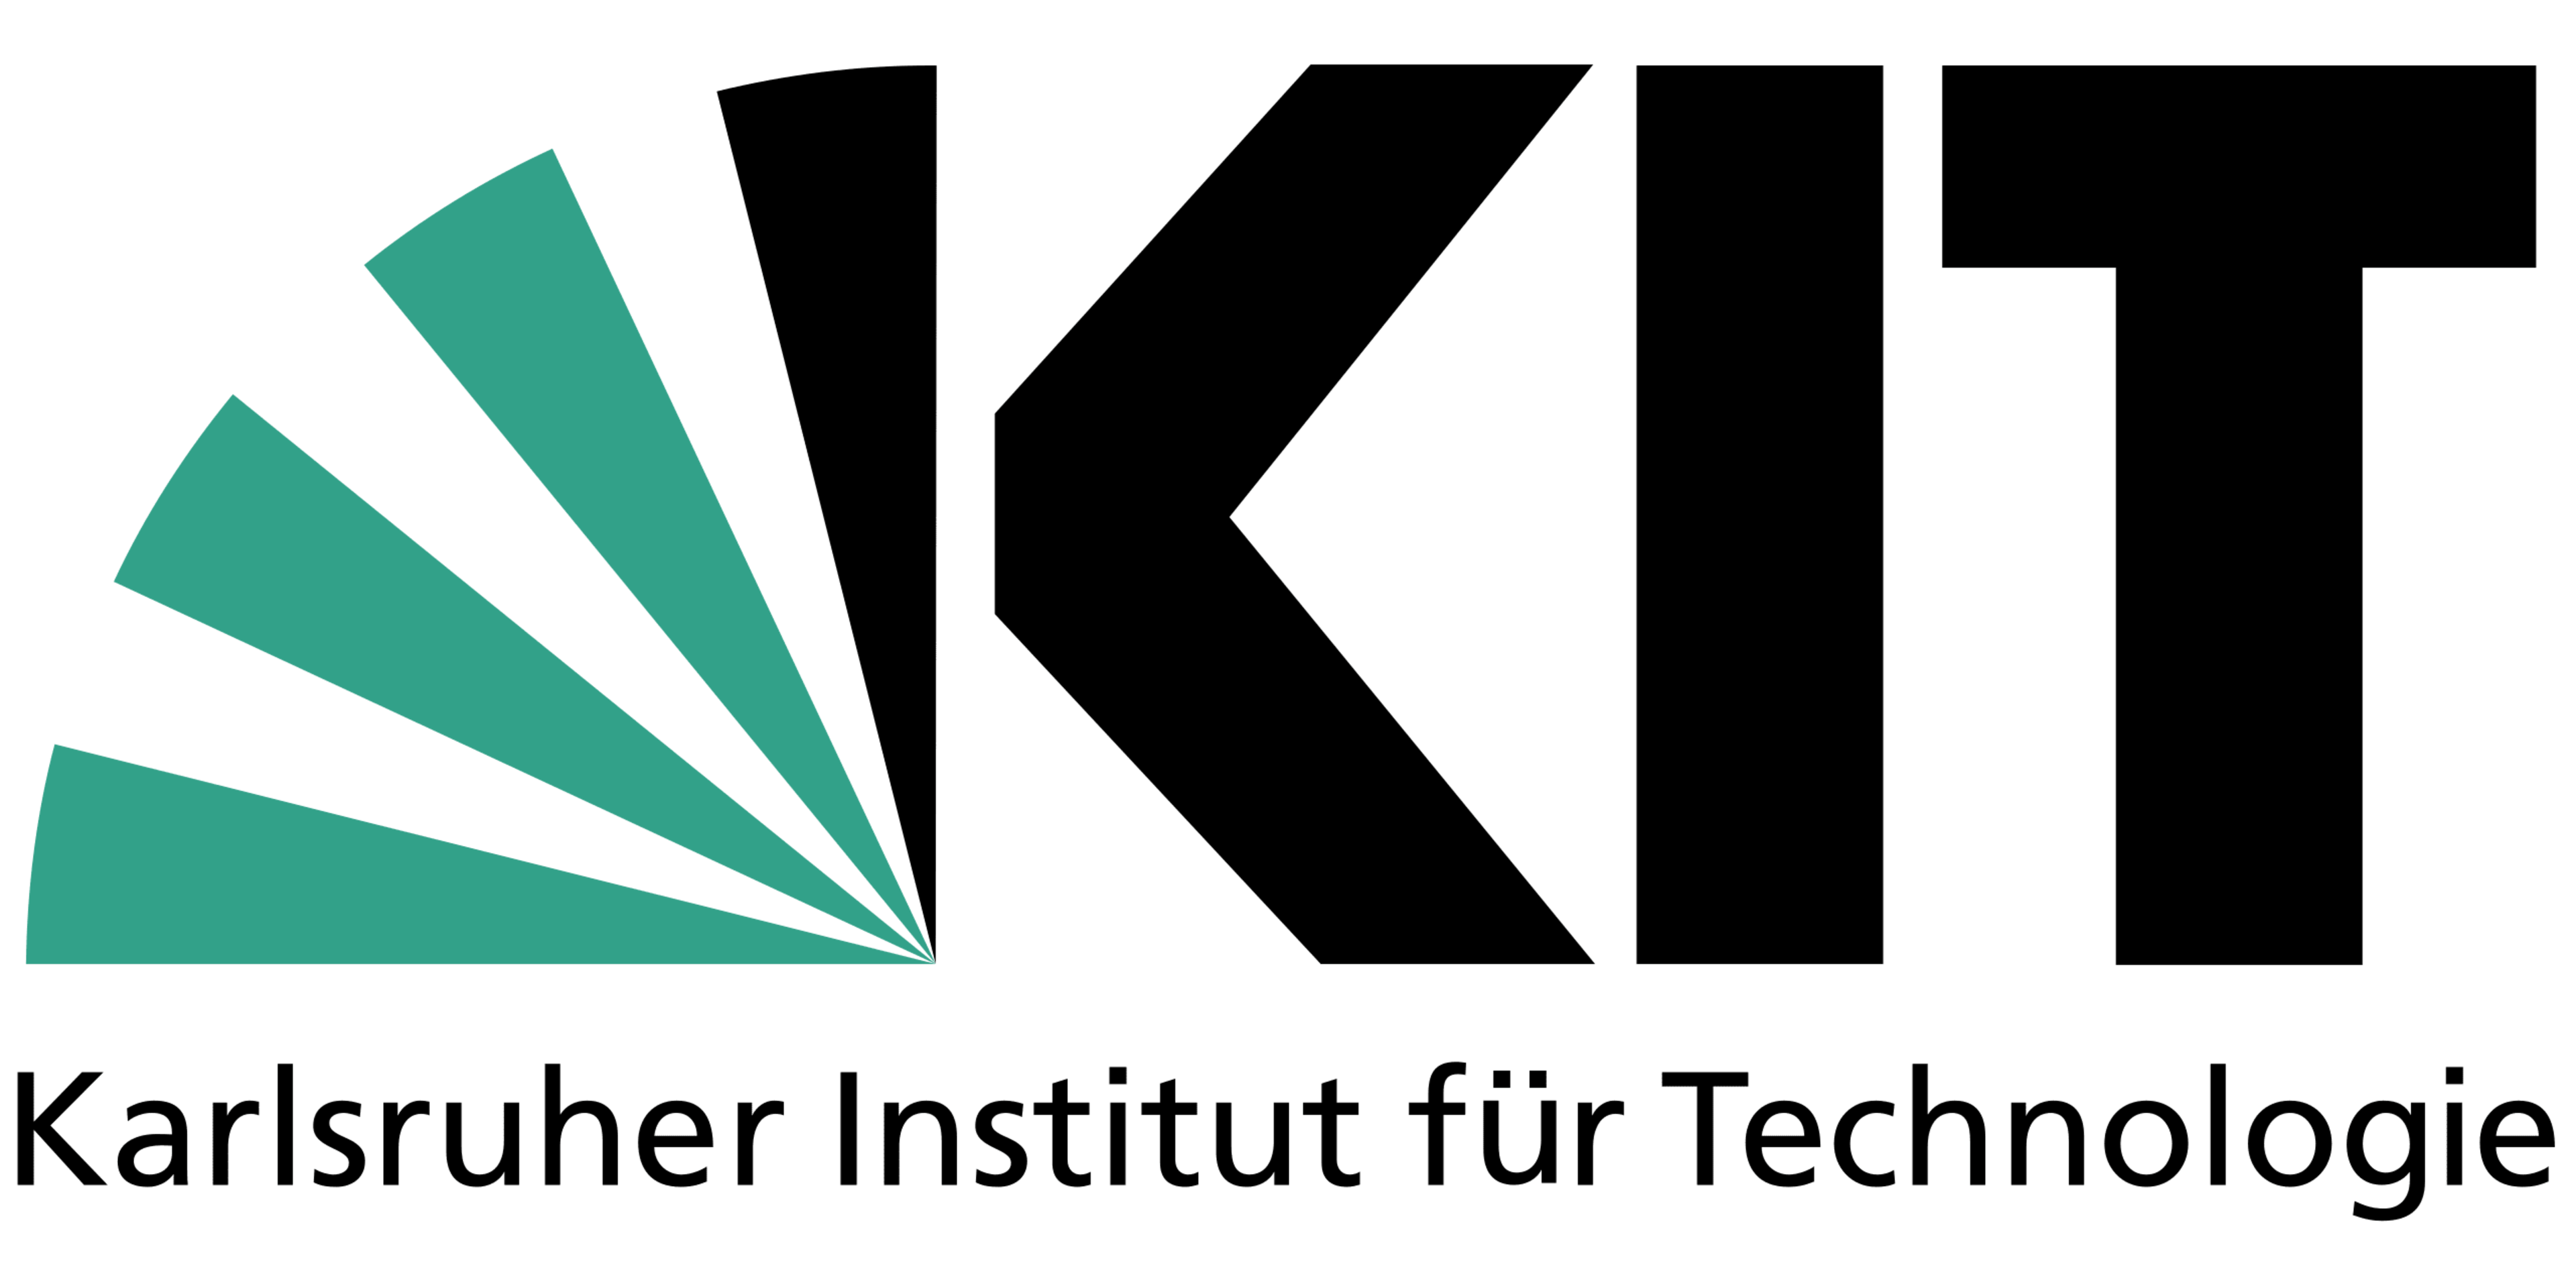 Karlsruher Institut für Technologie logo